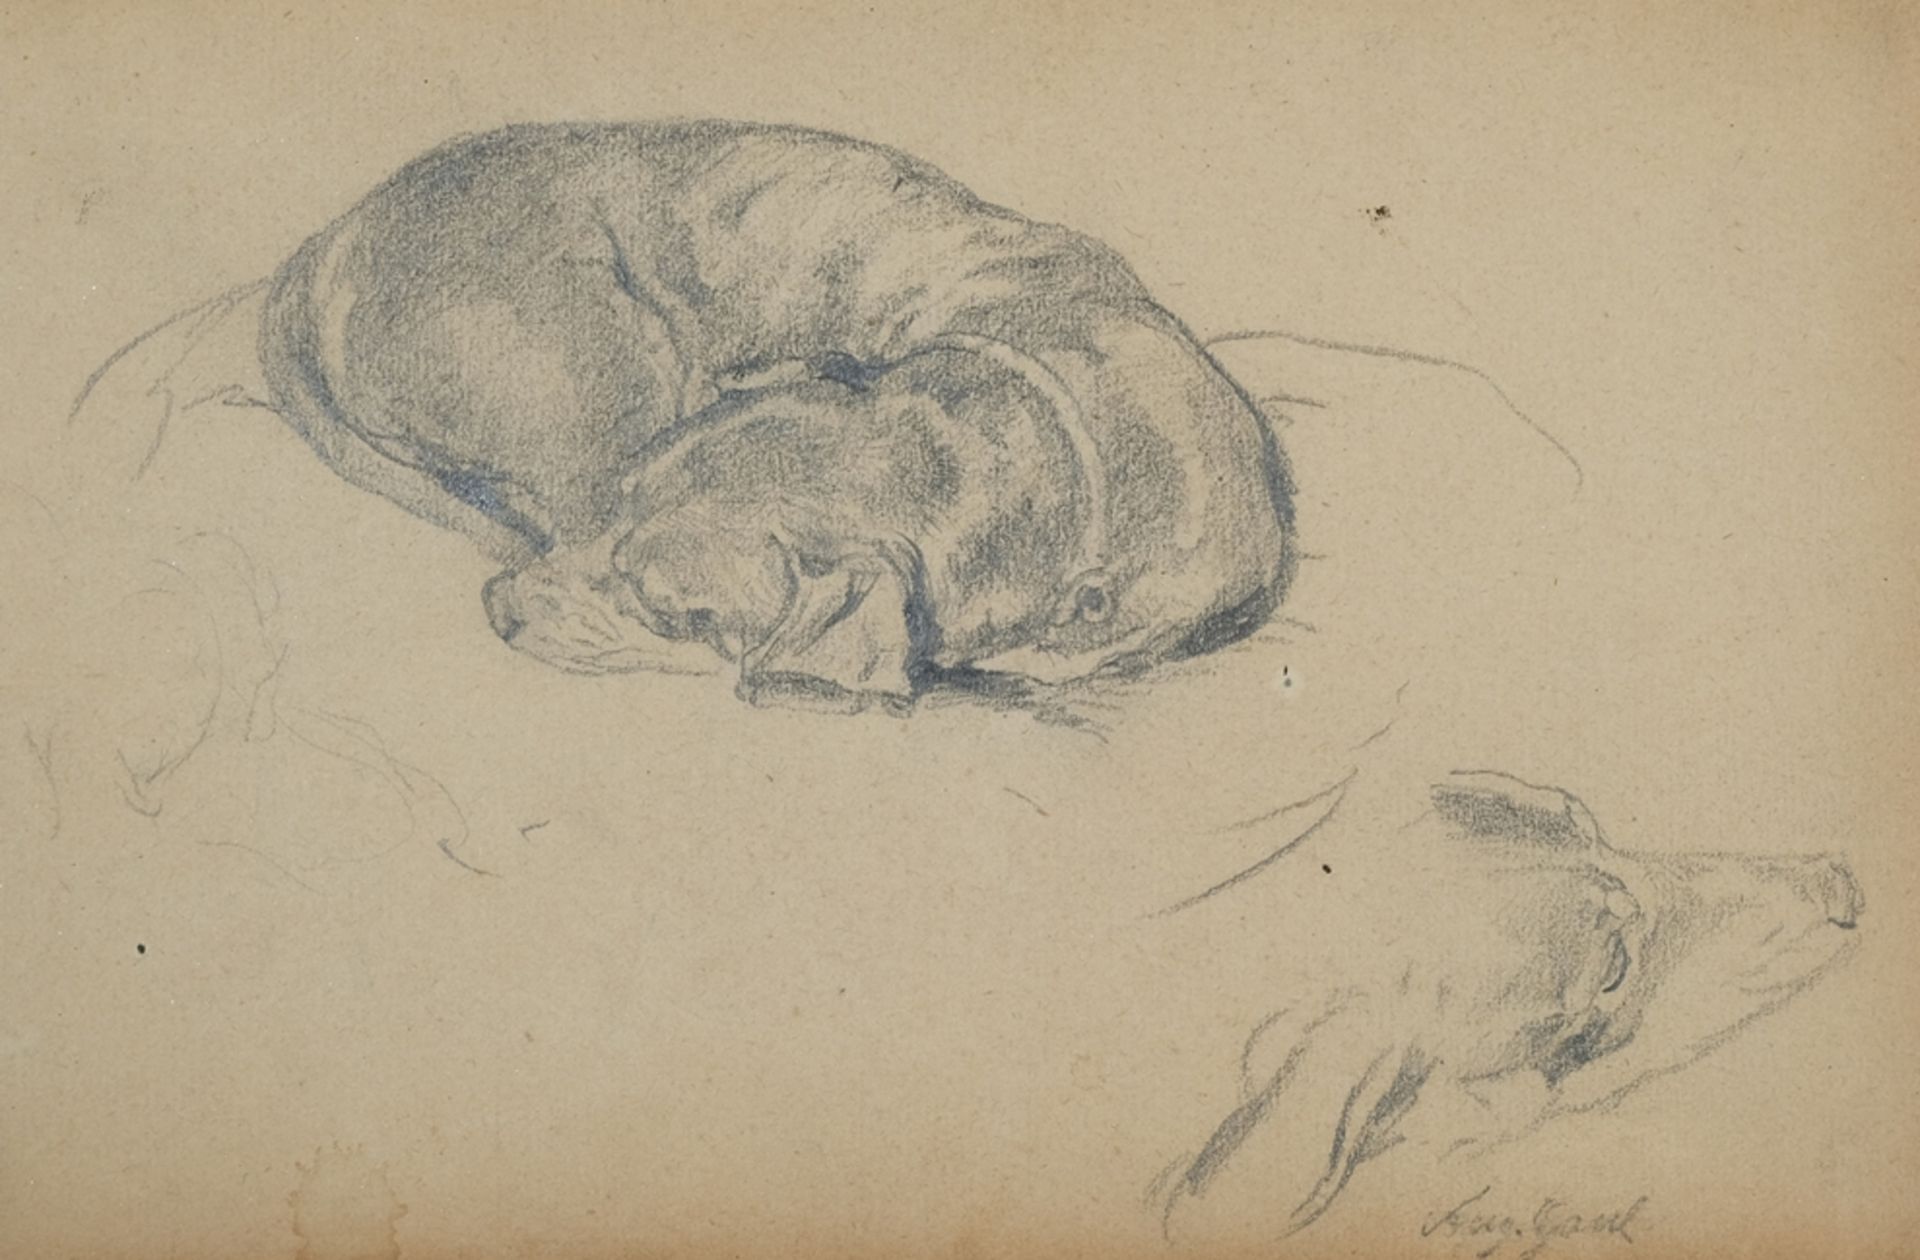 Gaul, Georg August (1869-1921) Hunde Studie, Bleistiftzeichnung auf Papier. 